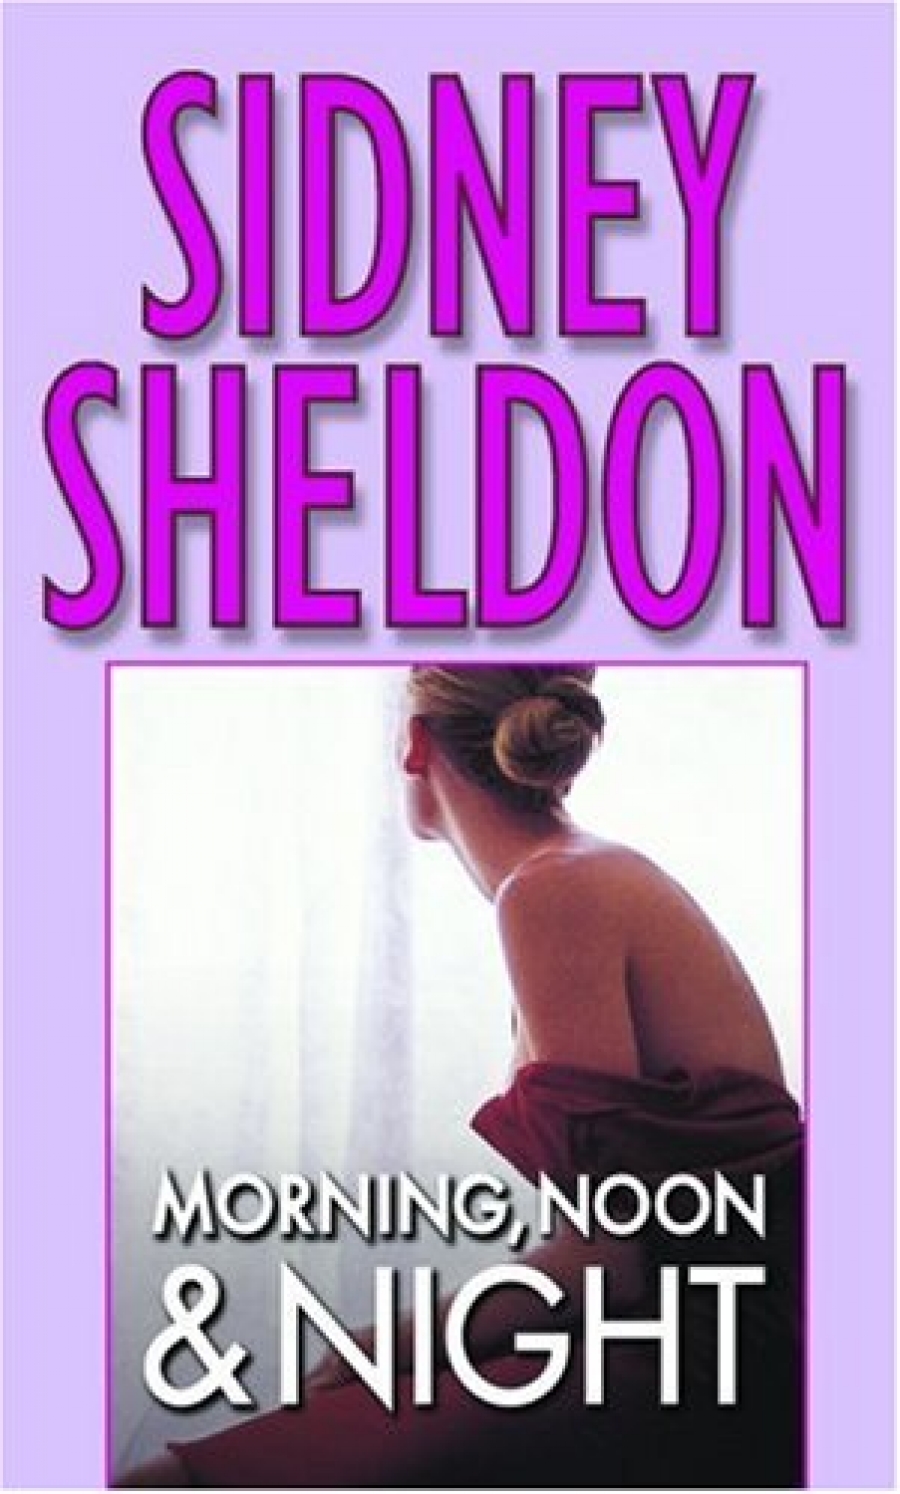 Sheldon Sidney Morning, Noon & Night 